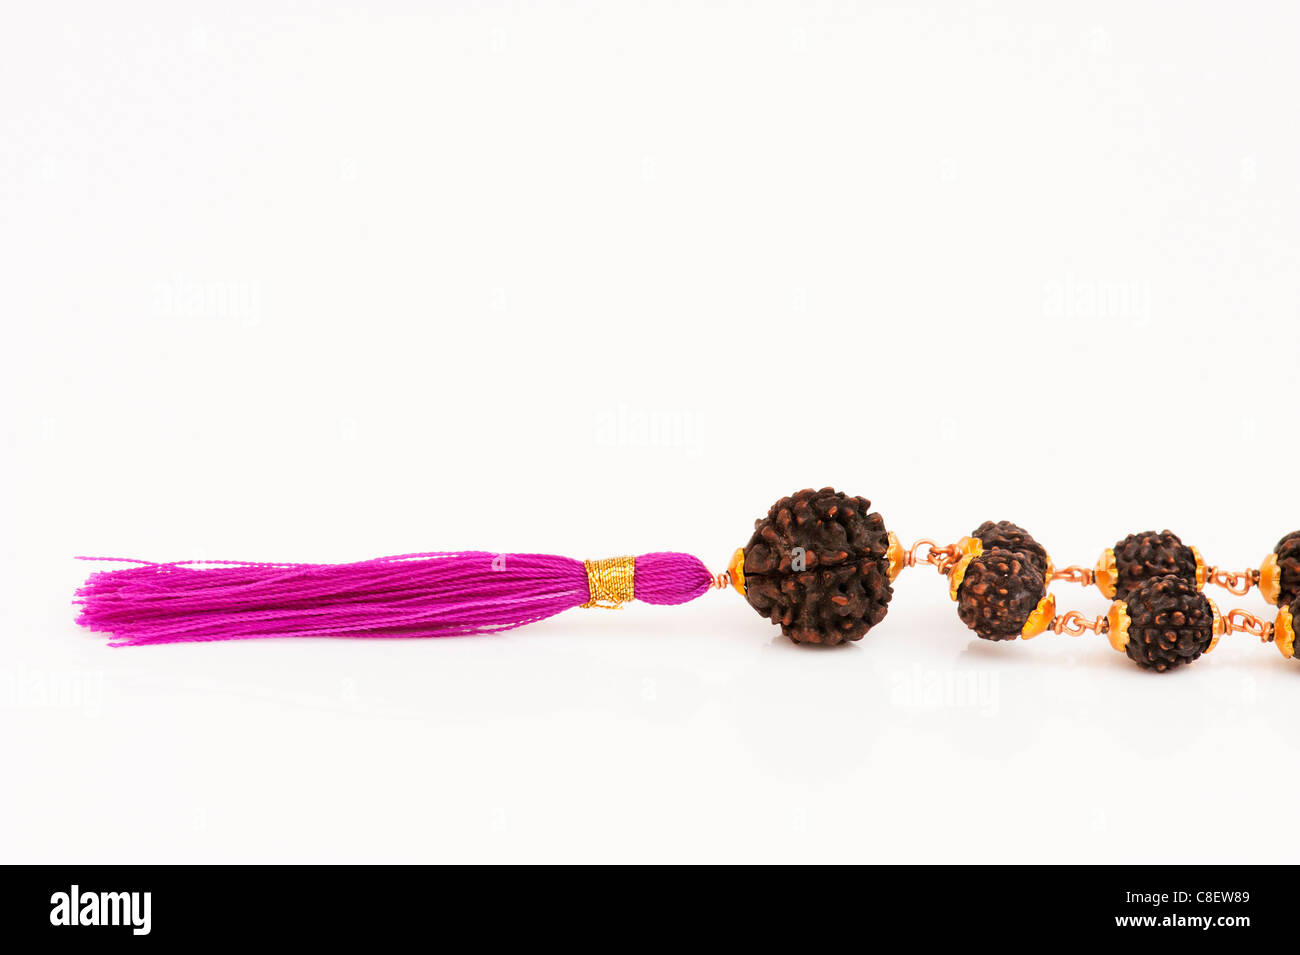 Indian Rudraksha / Japa Mala prayer beads on white background Stock Photo